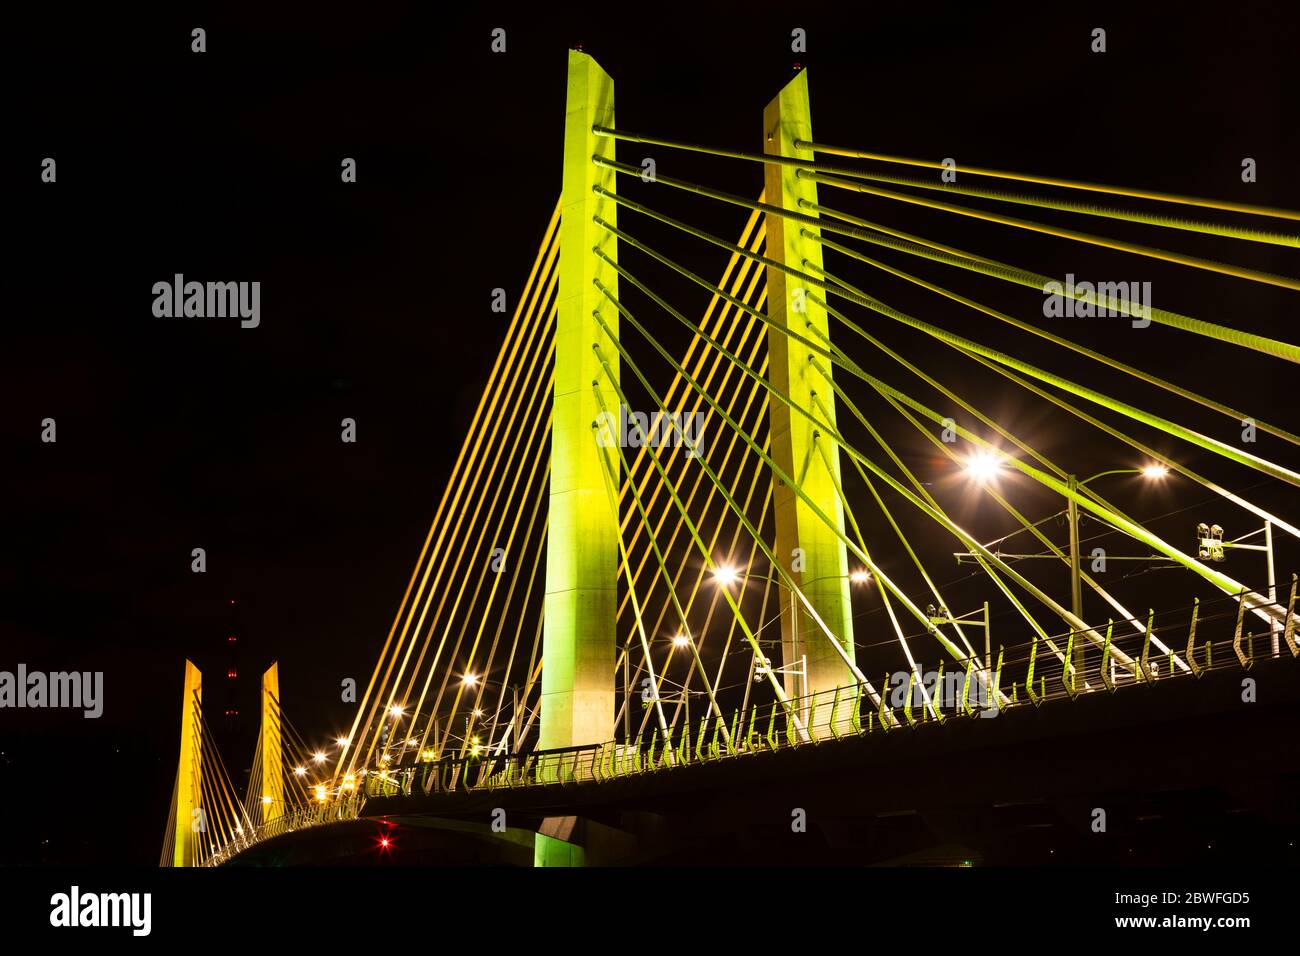 Pont de Tilikum Crossing illuminé la nuit, Portland, Oregon, États-Unis Banque D'Images